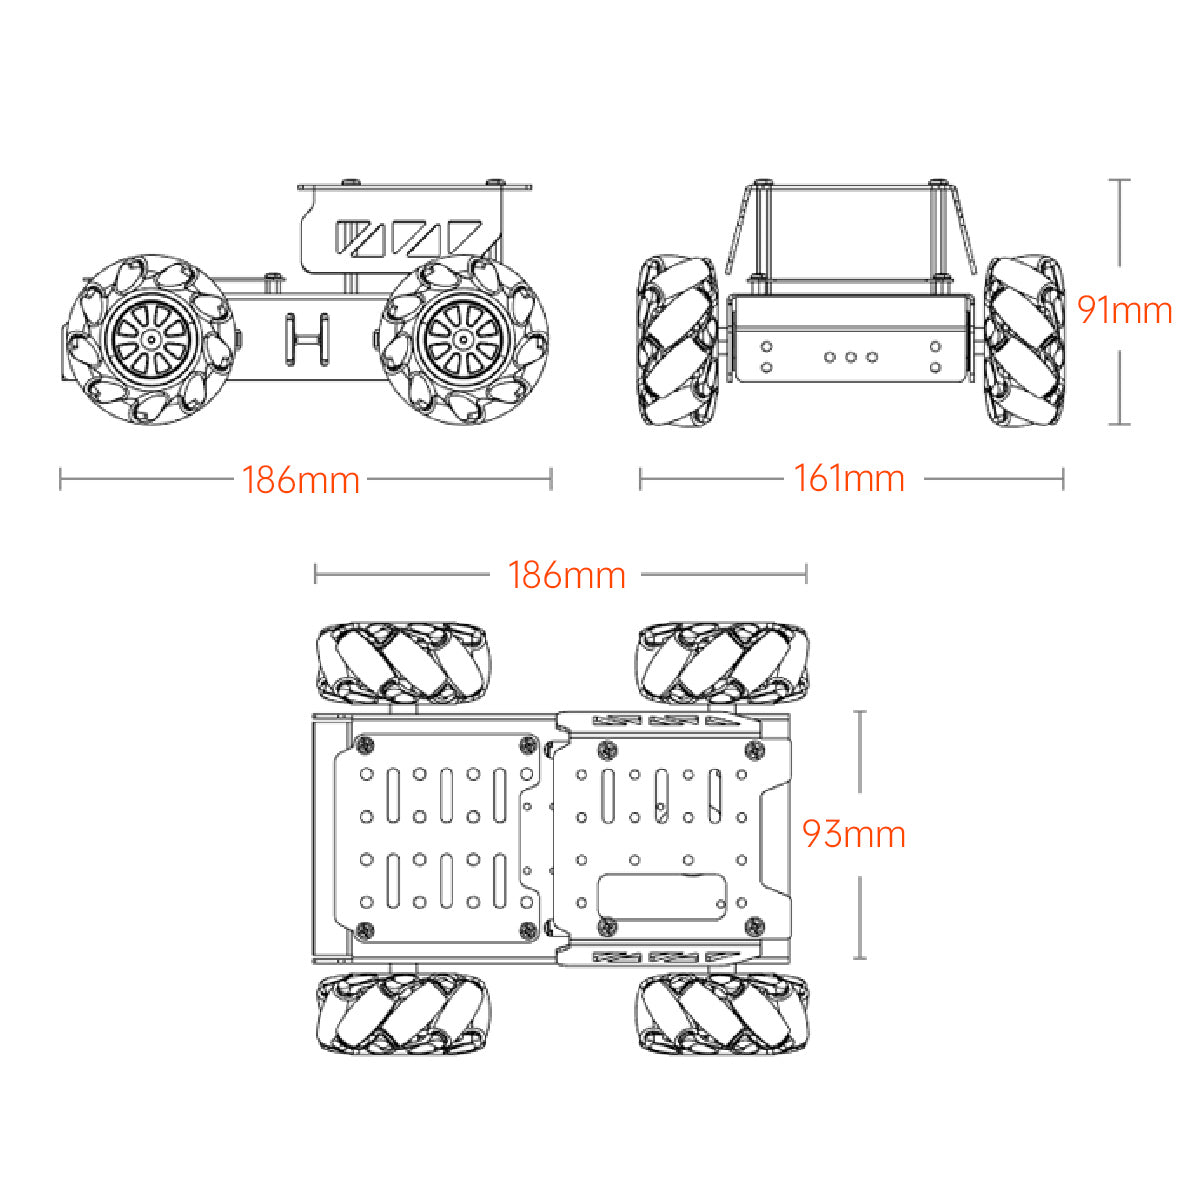 Hiwonder Mecanum Wheel Chassis Car Kit with TT Motor, Aluminum Alloy Frame, Smart Car Kit for DIY Education Robot Car Kit